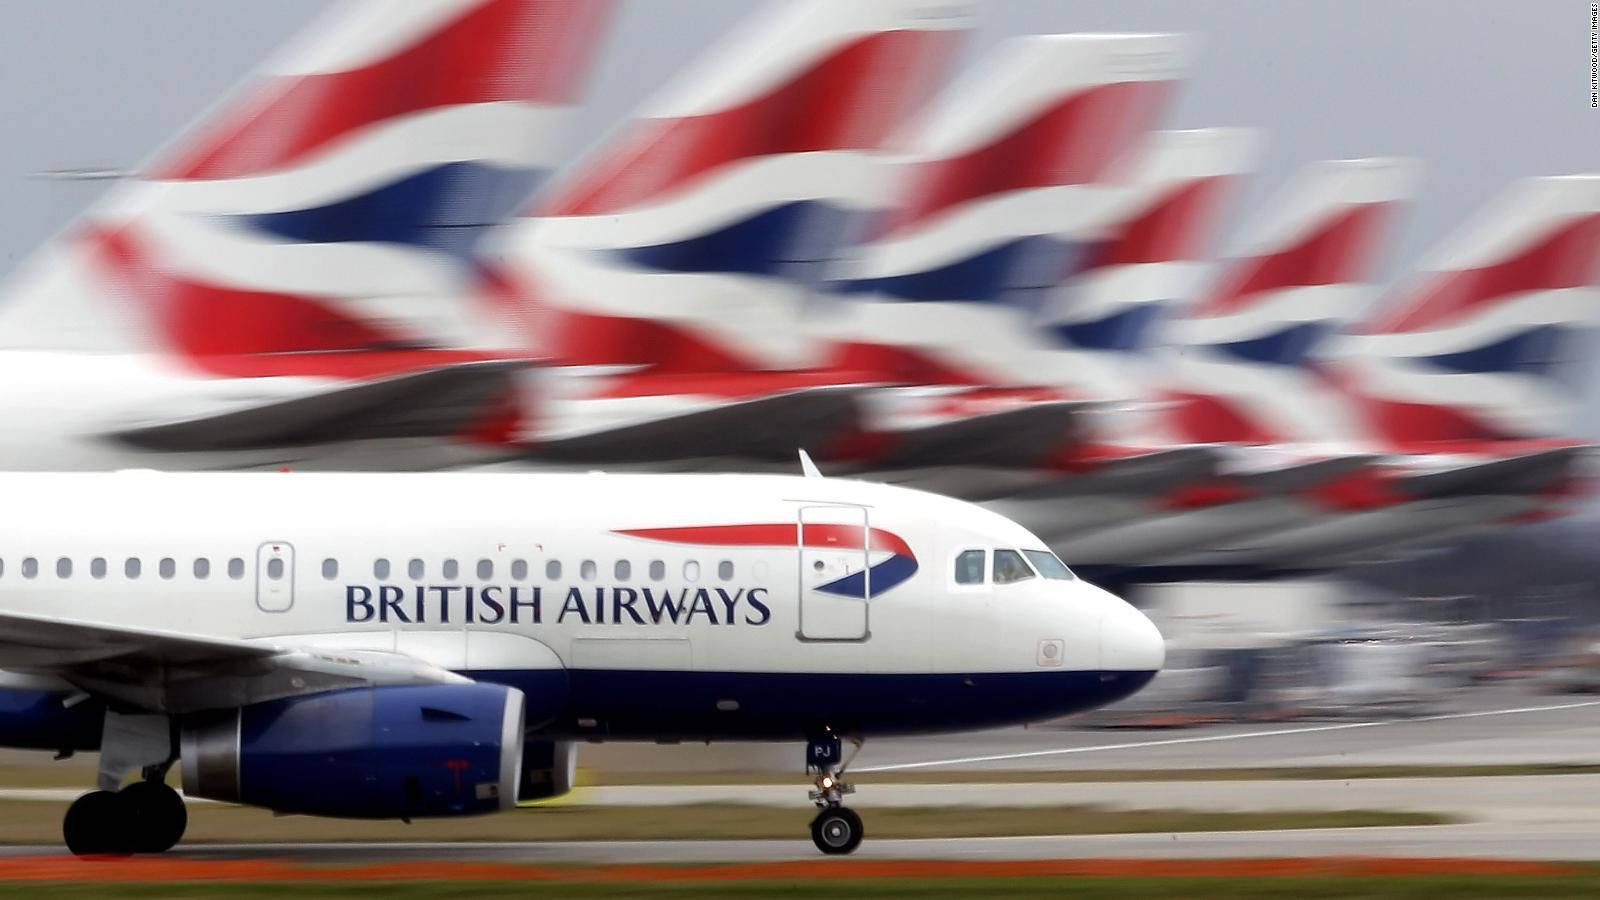 British Airways 1600 X 900 Wallpaper